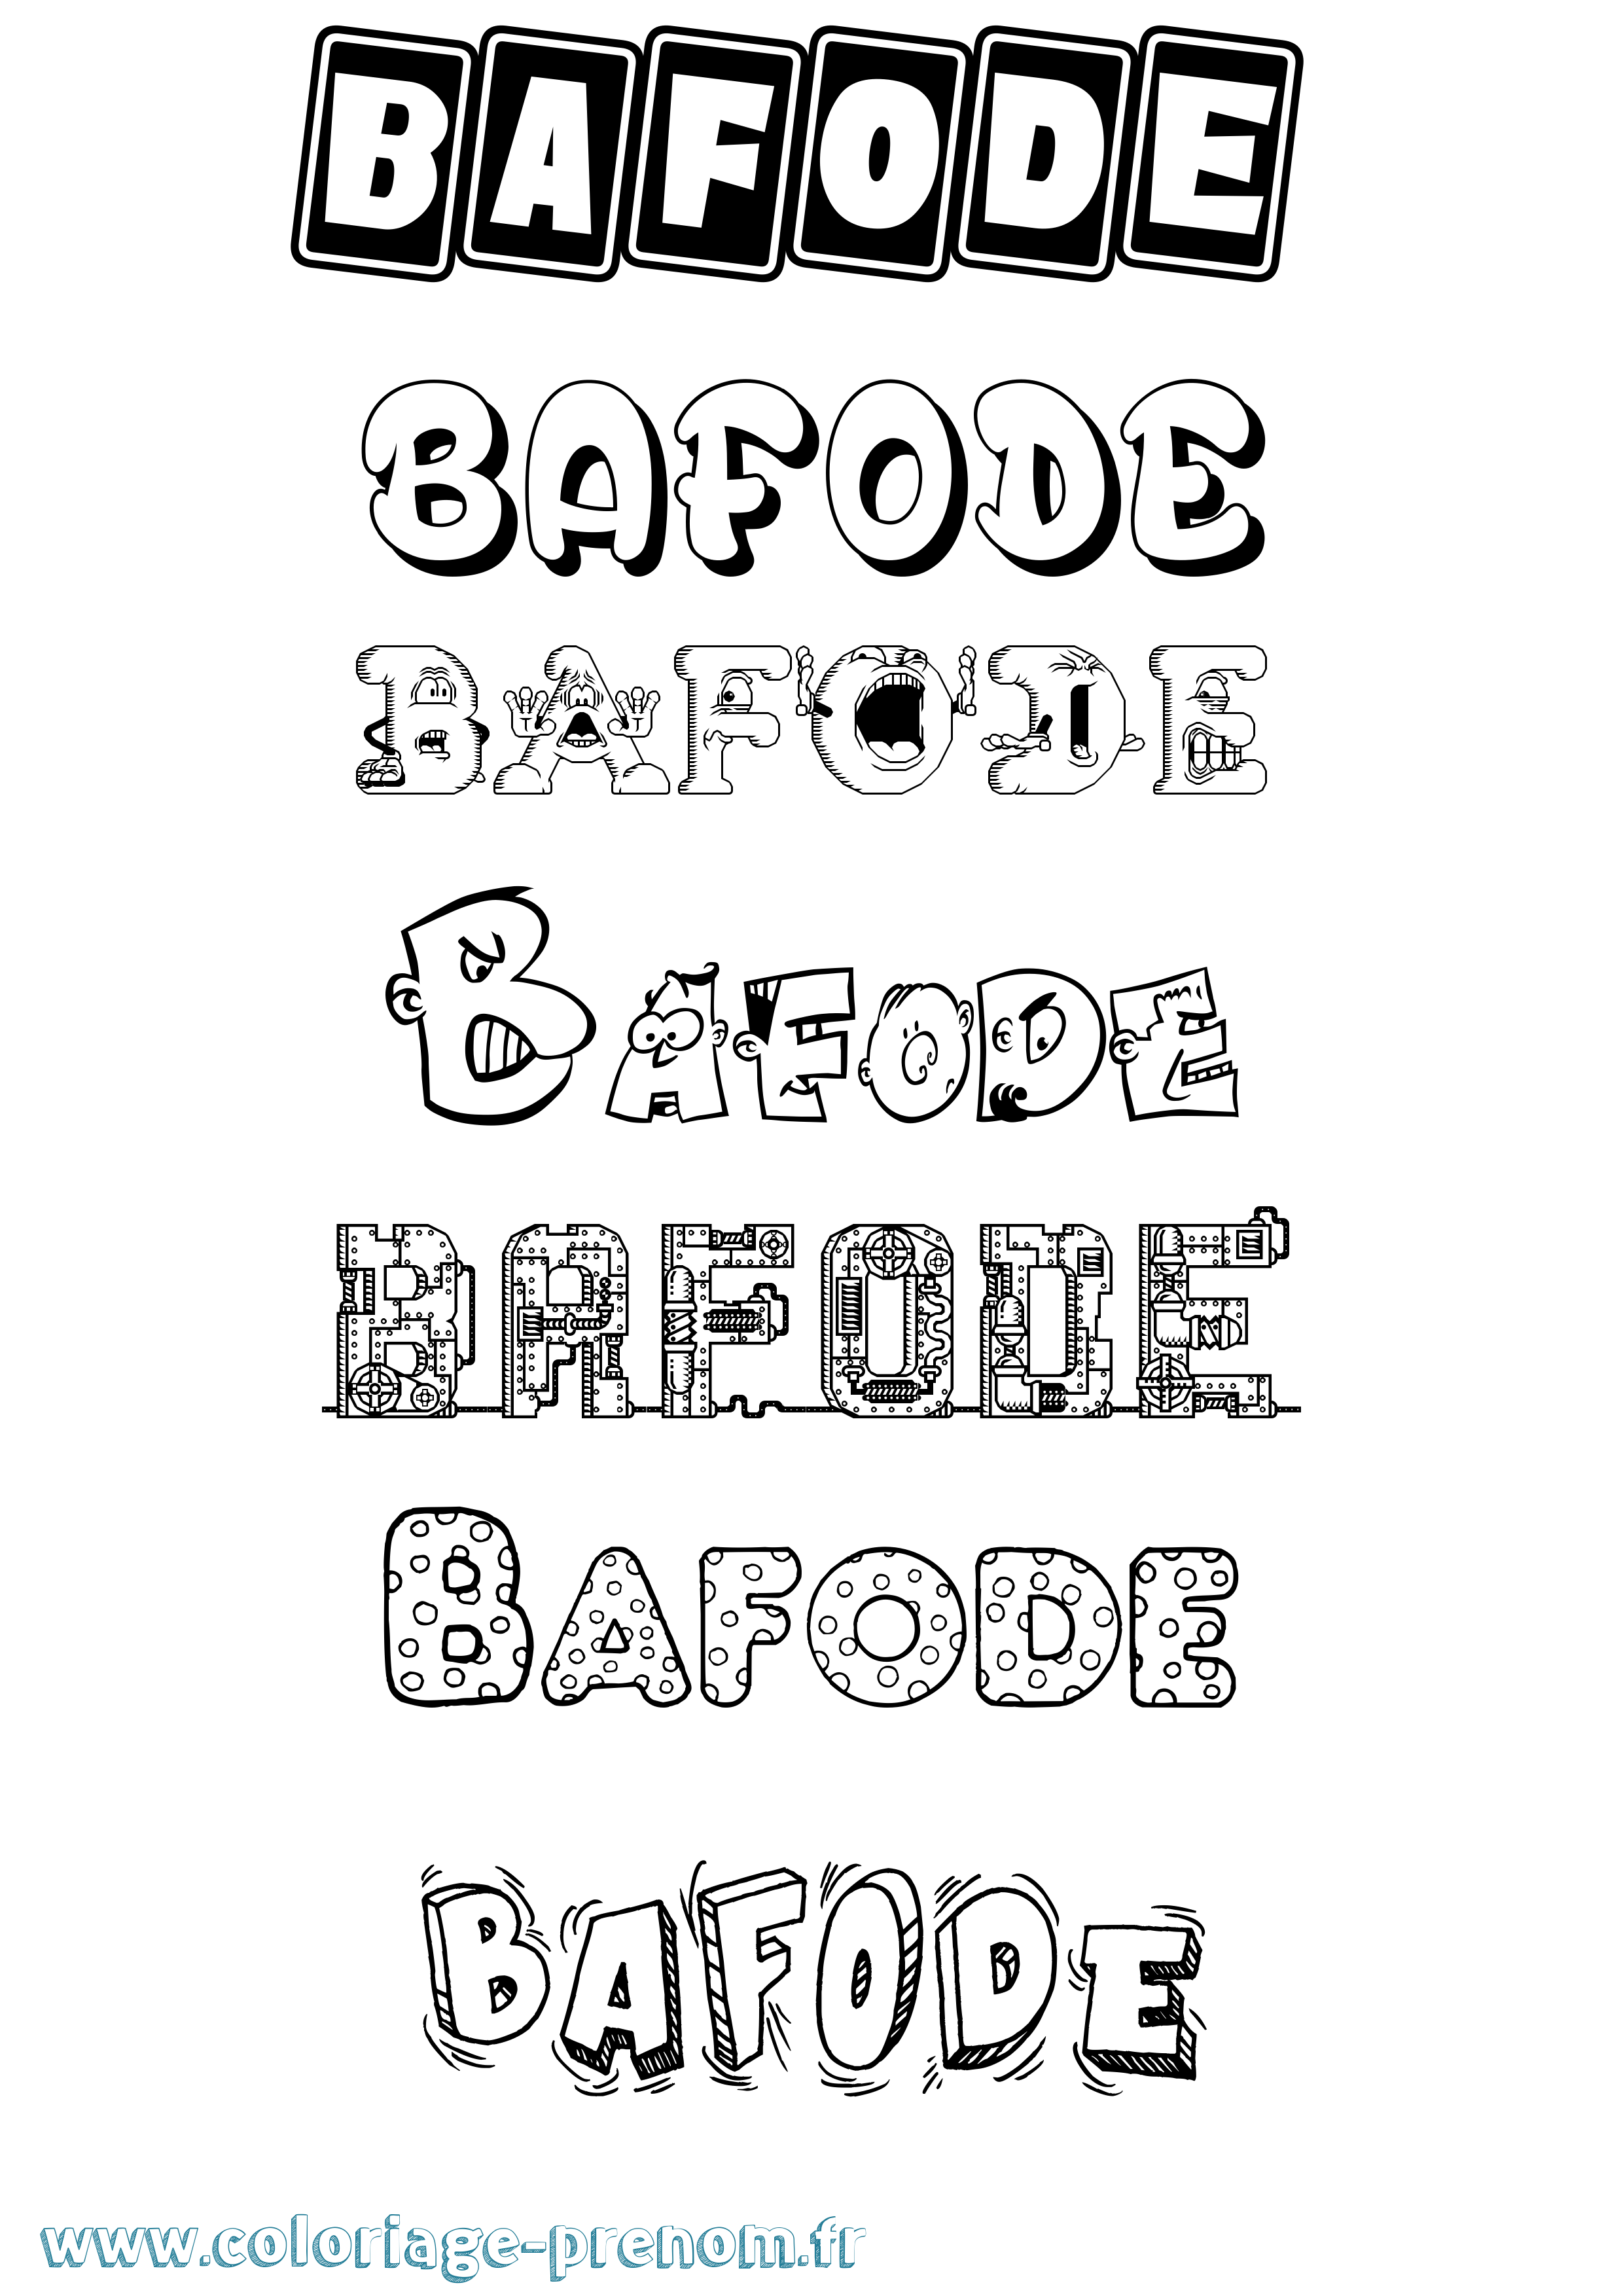 Coloriage prénom Bafode